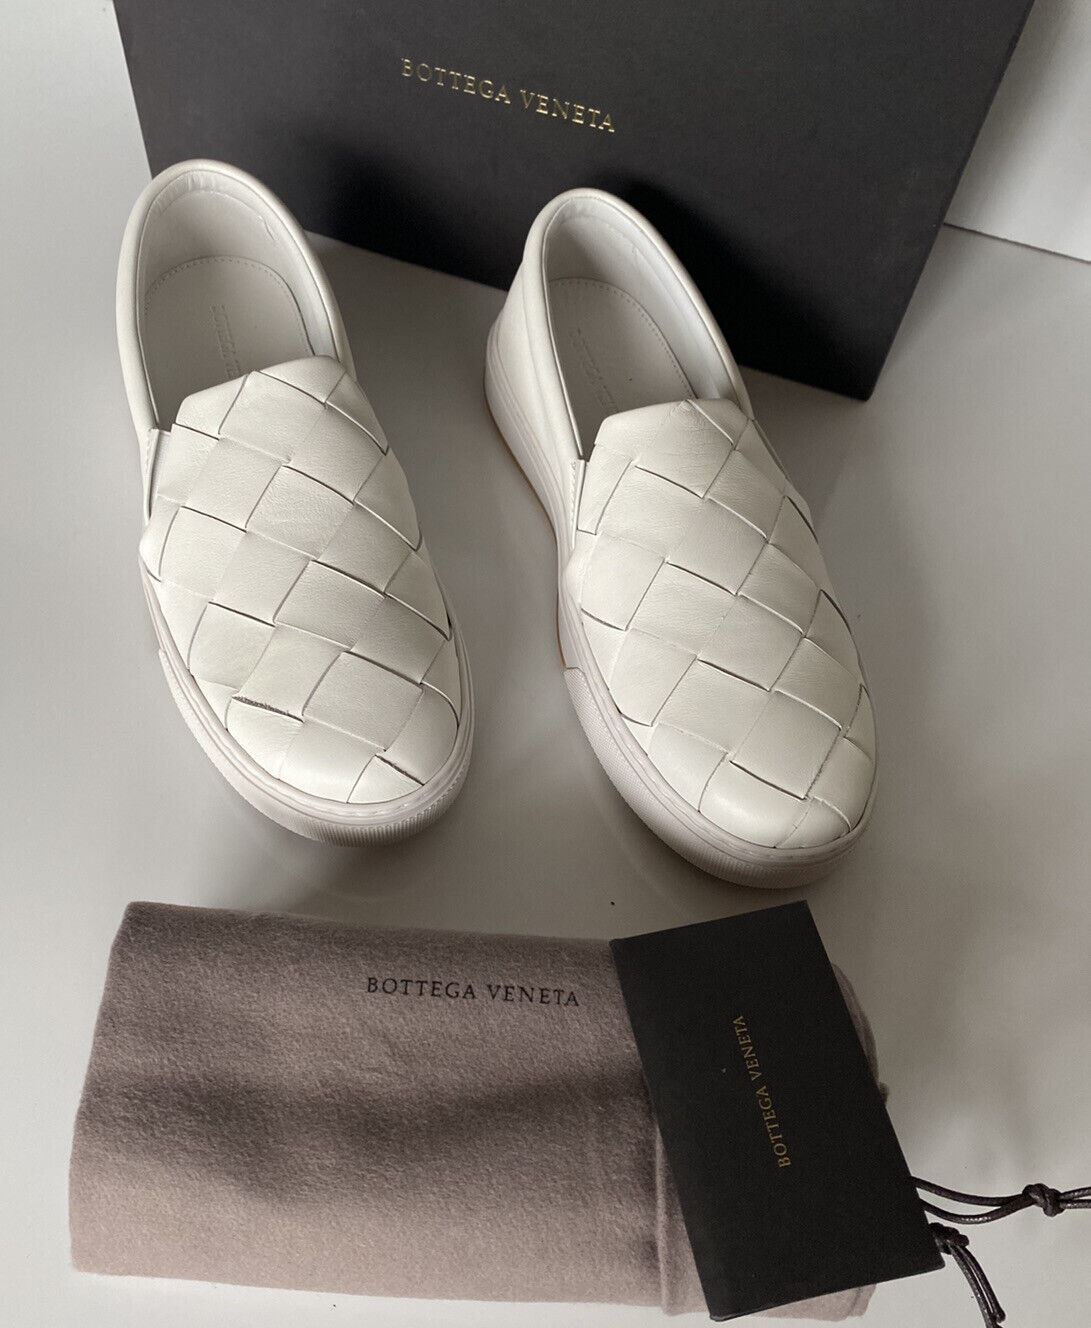 NIB 790 долларов США Bottega Veneta Белые туфли из телячьей кожи с резиновой подошвой и оптикой 7, США 608949 